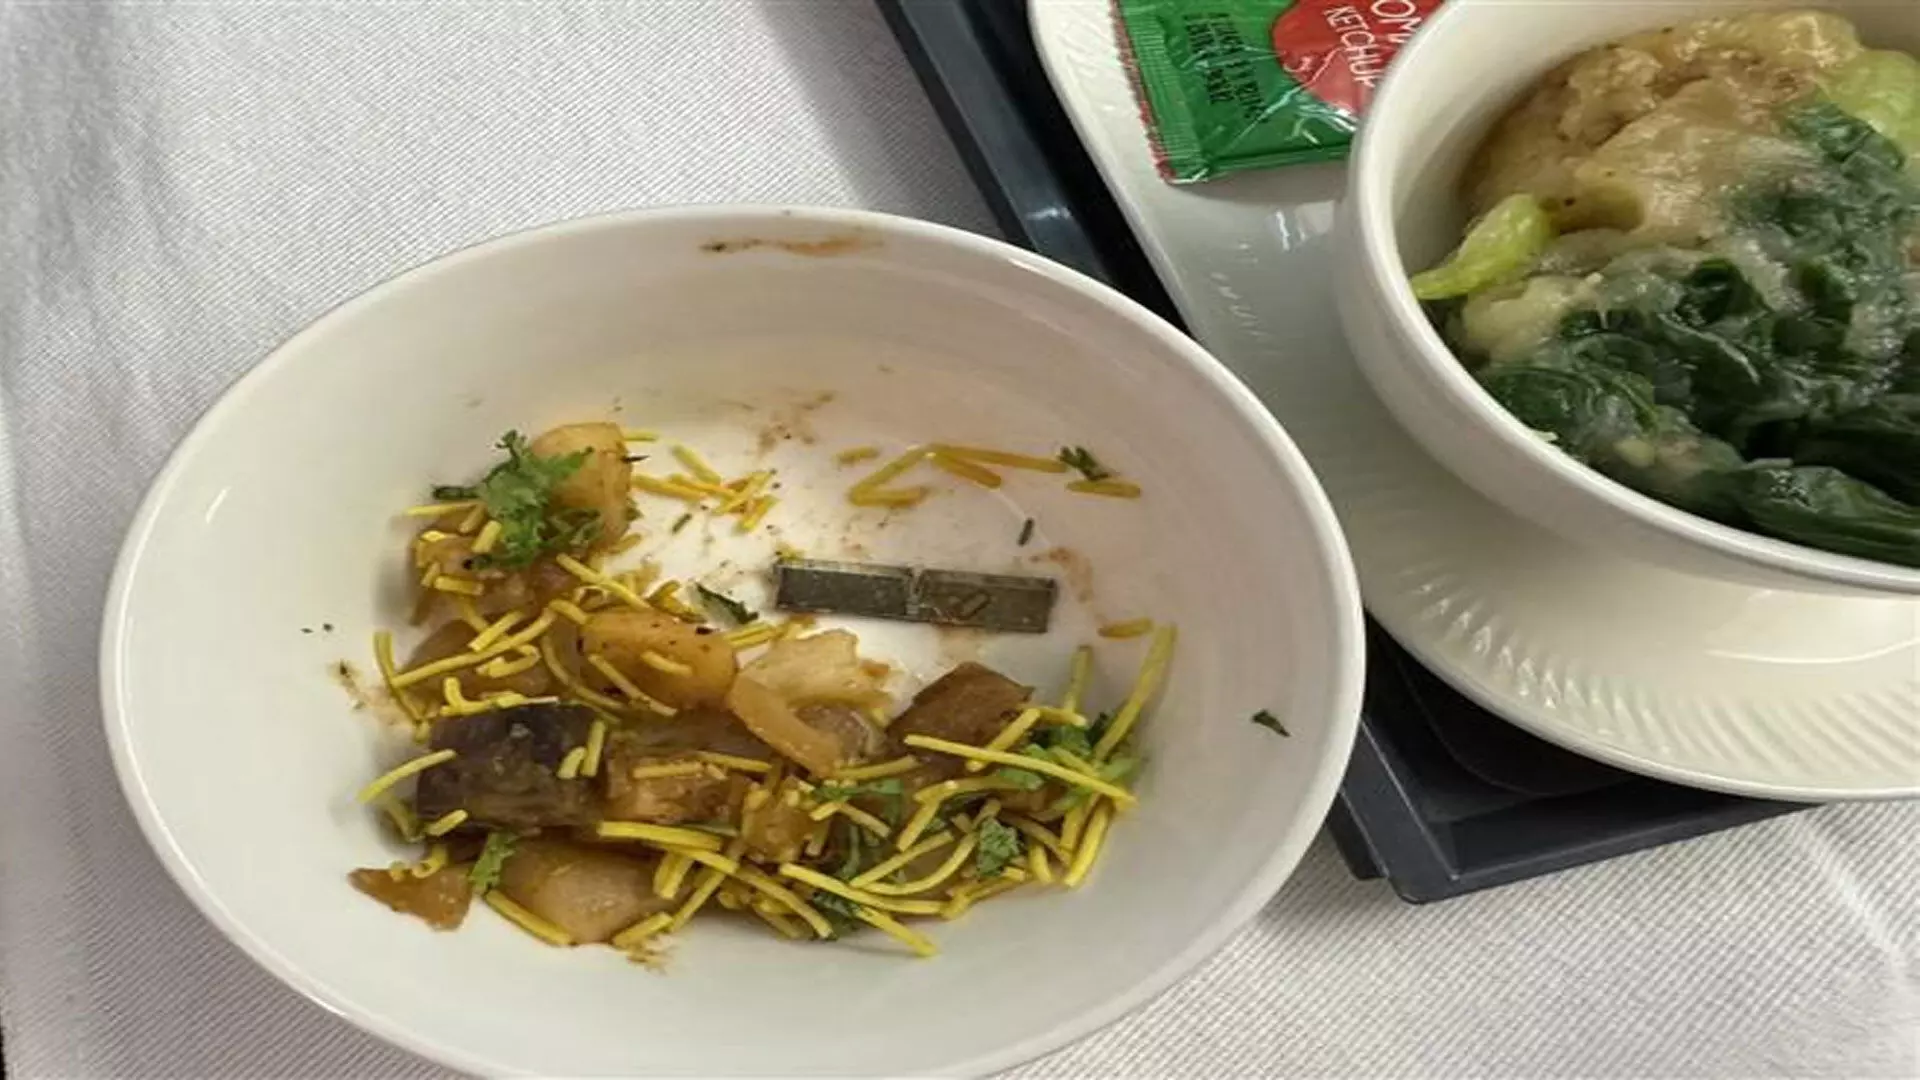 Air India के यात्री के भोजन में ब्लेड जैसी धातु मिली, एयरलाइन ने दी प्रतिक्रिया